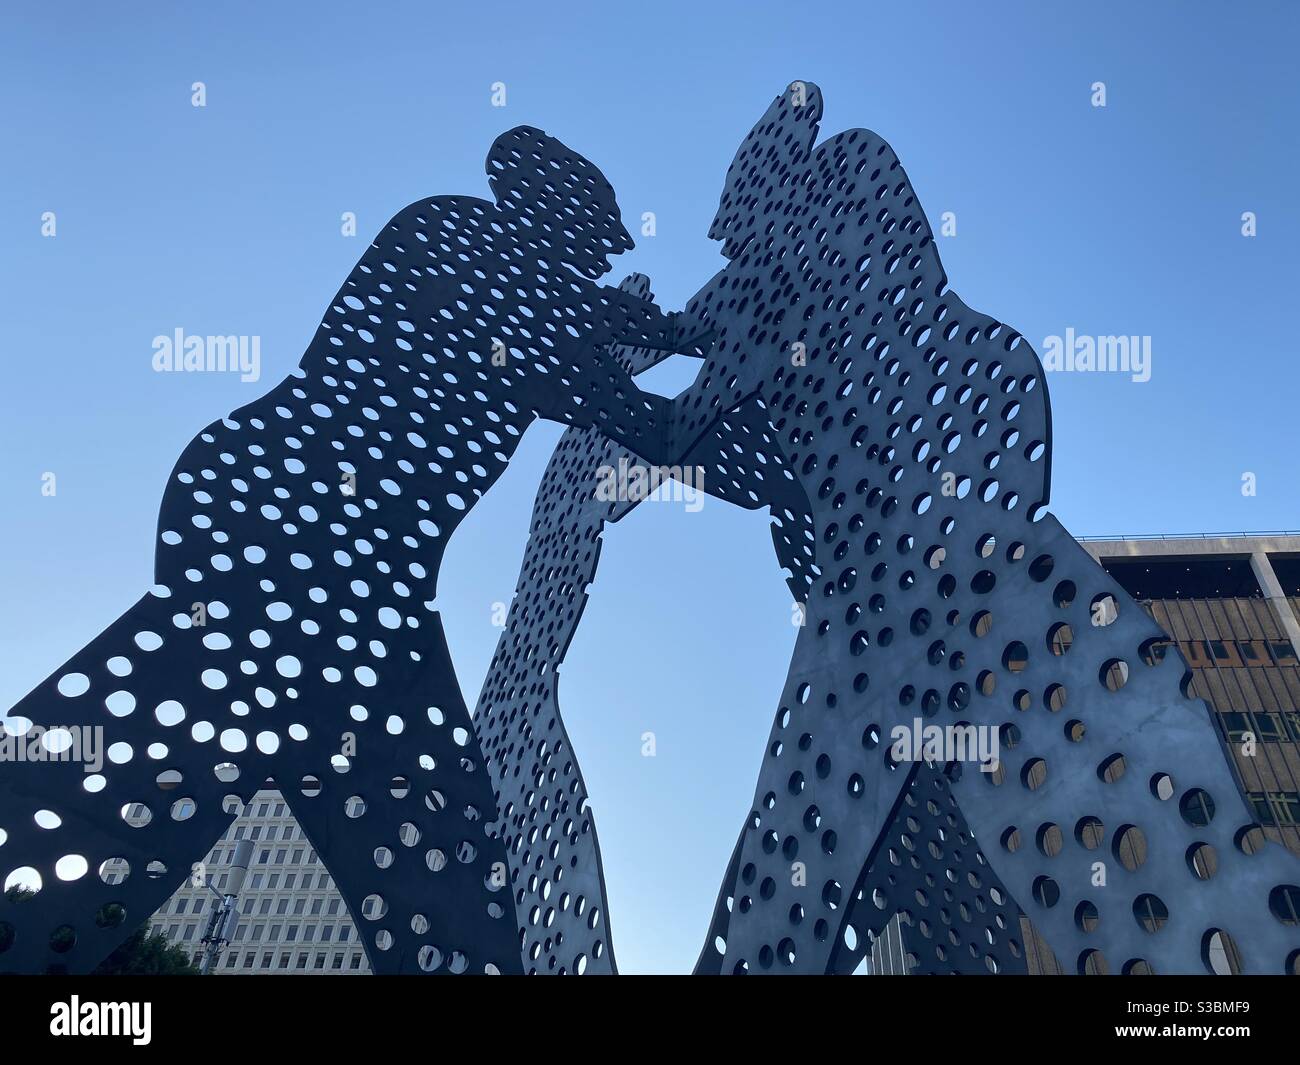 LOS ANGELES, CA, AUG 2020: Downtown, Looking up at Molecule man, drei riesige Aluminium-menschliche Formen mit Löchern, die Moleküle darstellen, entworfen von dem amerikanischen Künstler Jonathan Borofsky Stockfoto